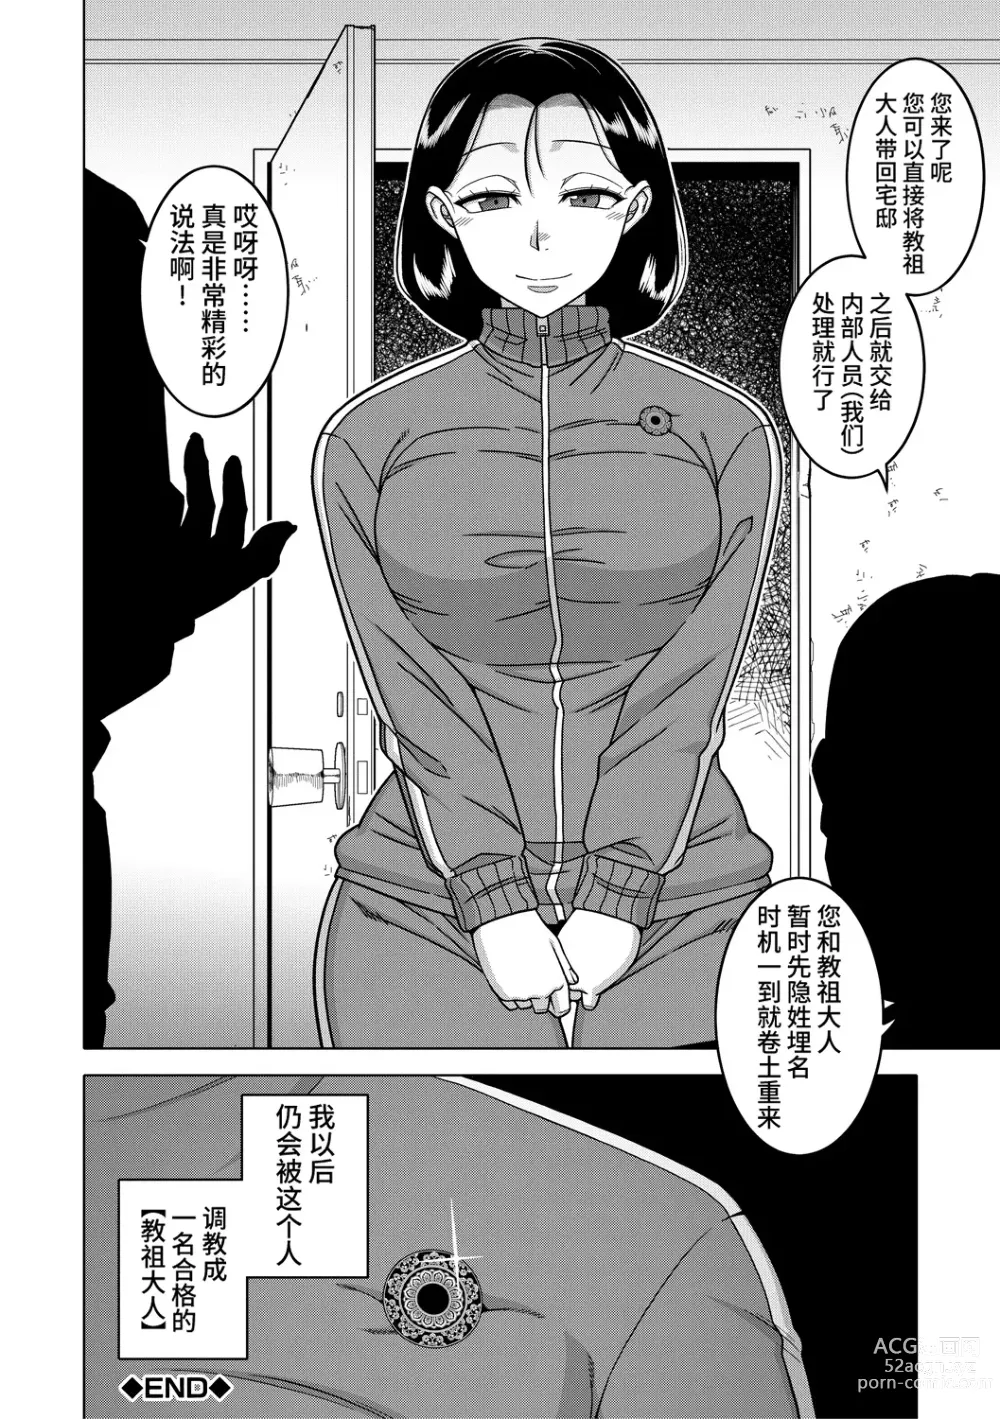 Page 198 of manga Kami-sama no Tsukurikata